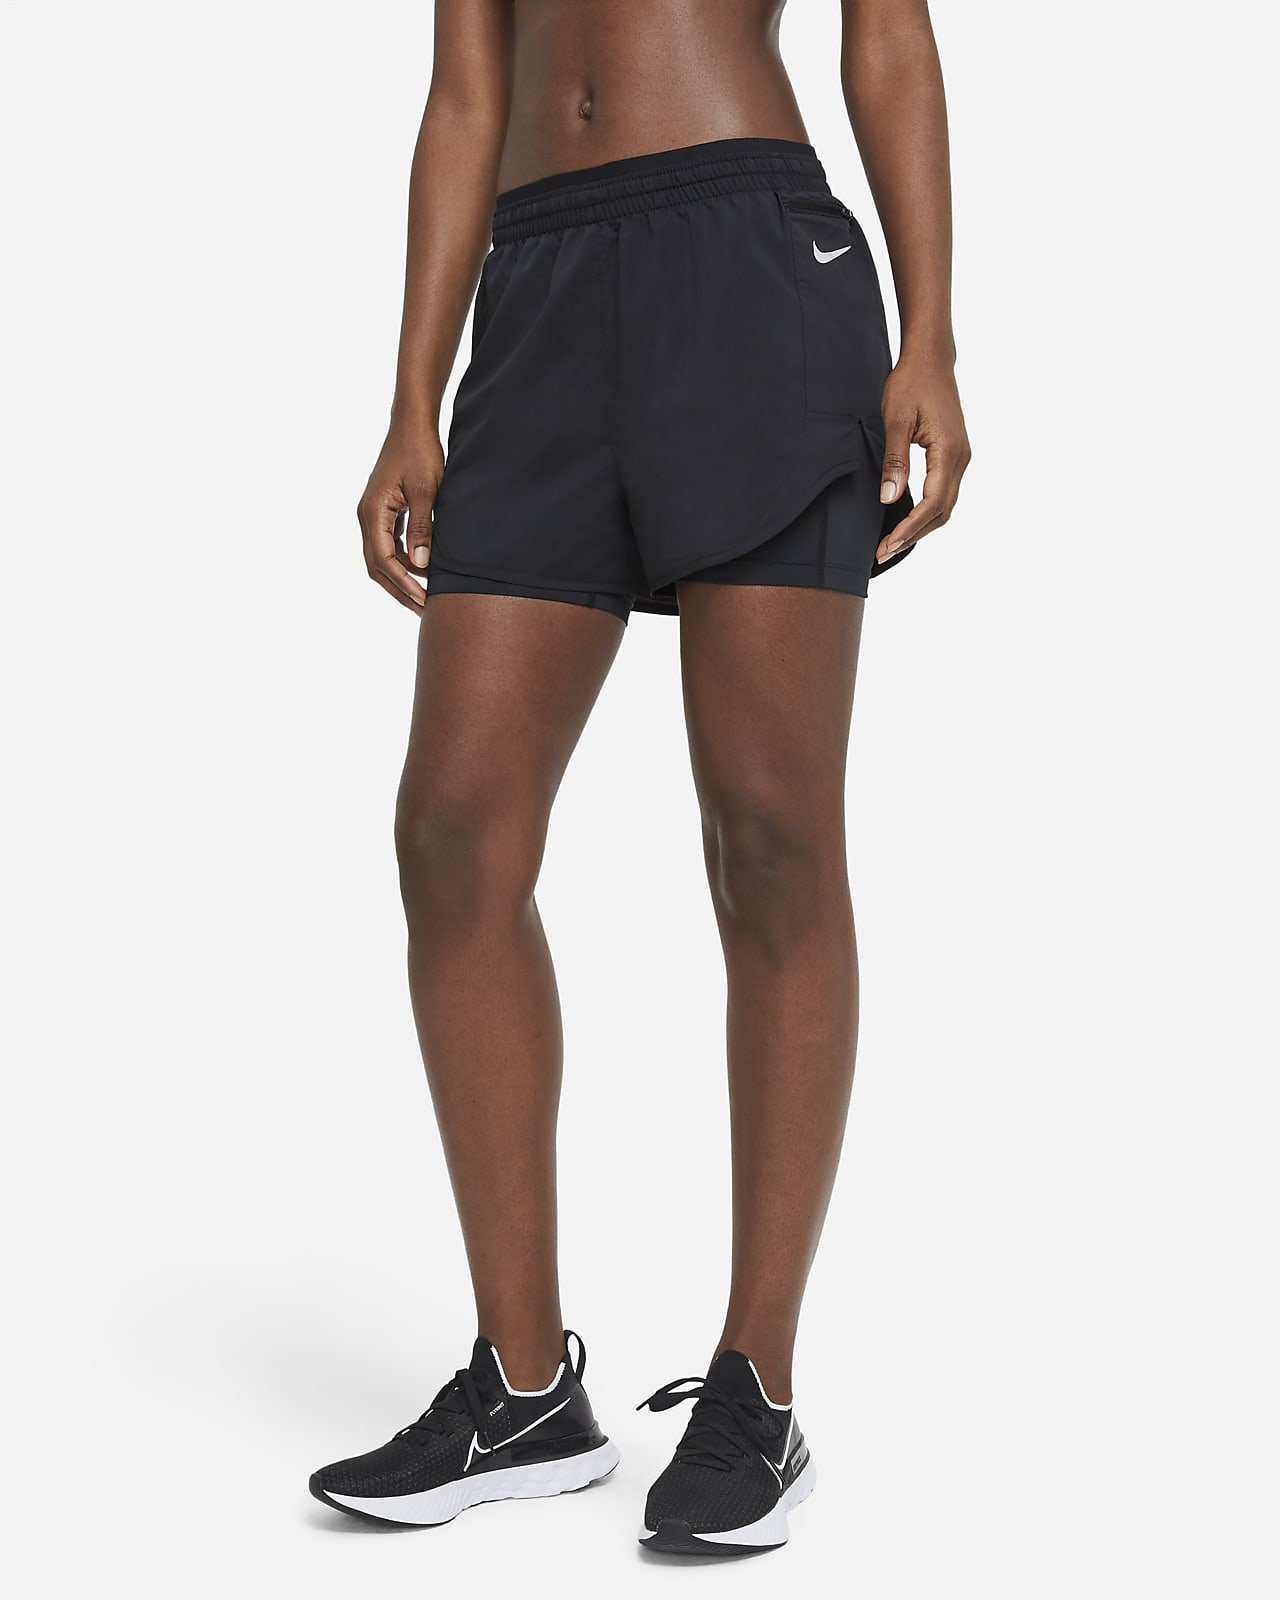 Nike Tempo Luxe Pantalons curts 2 en 1 de running - Dona